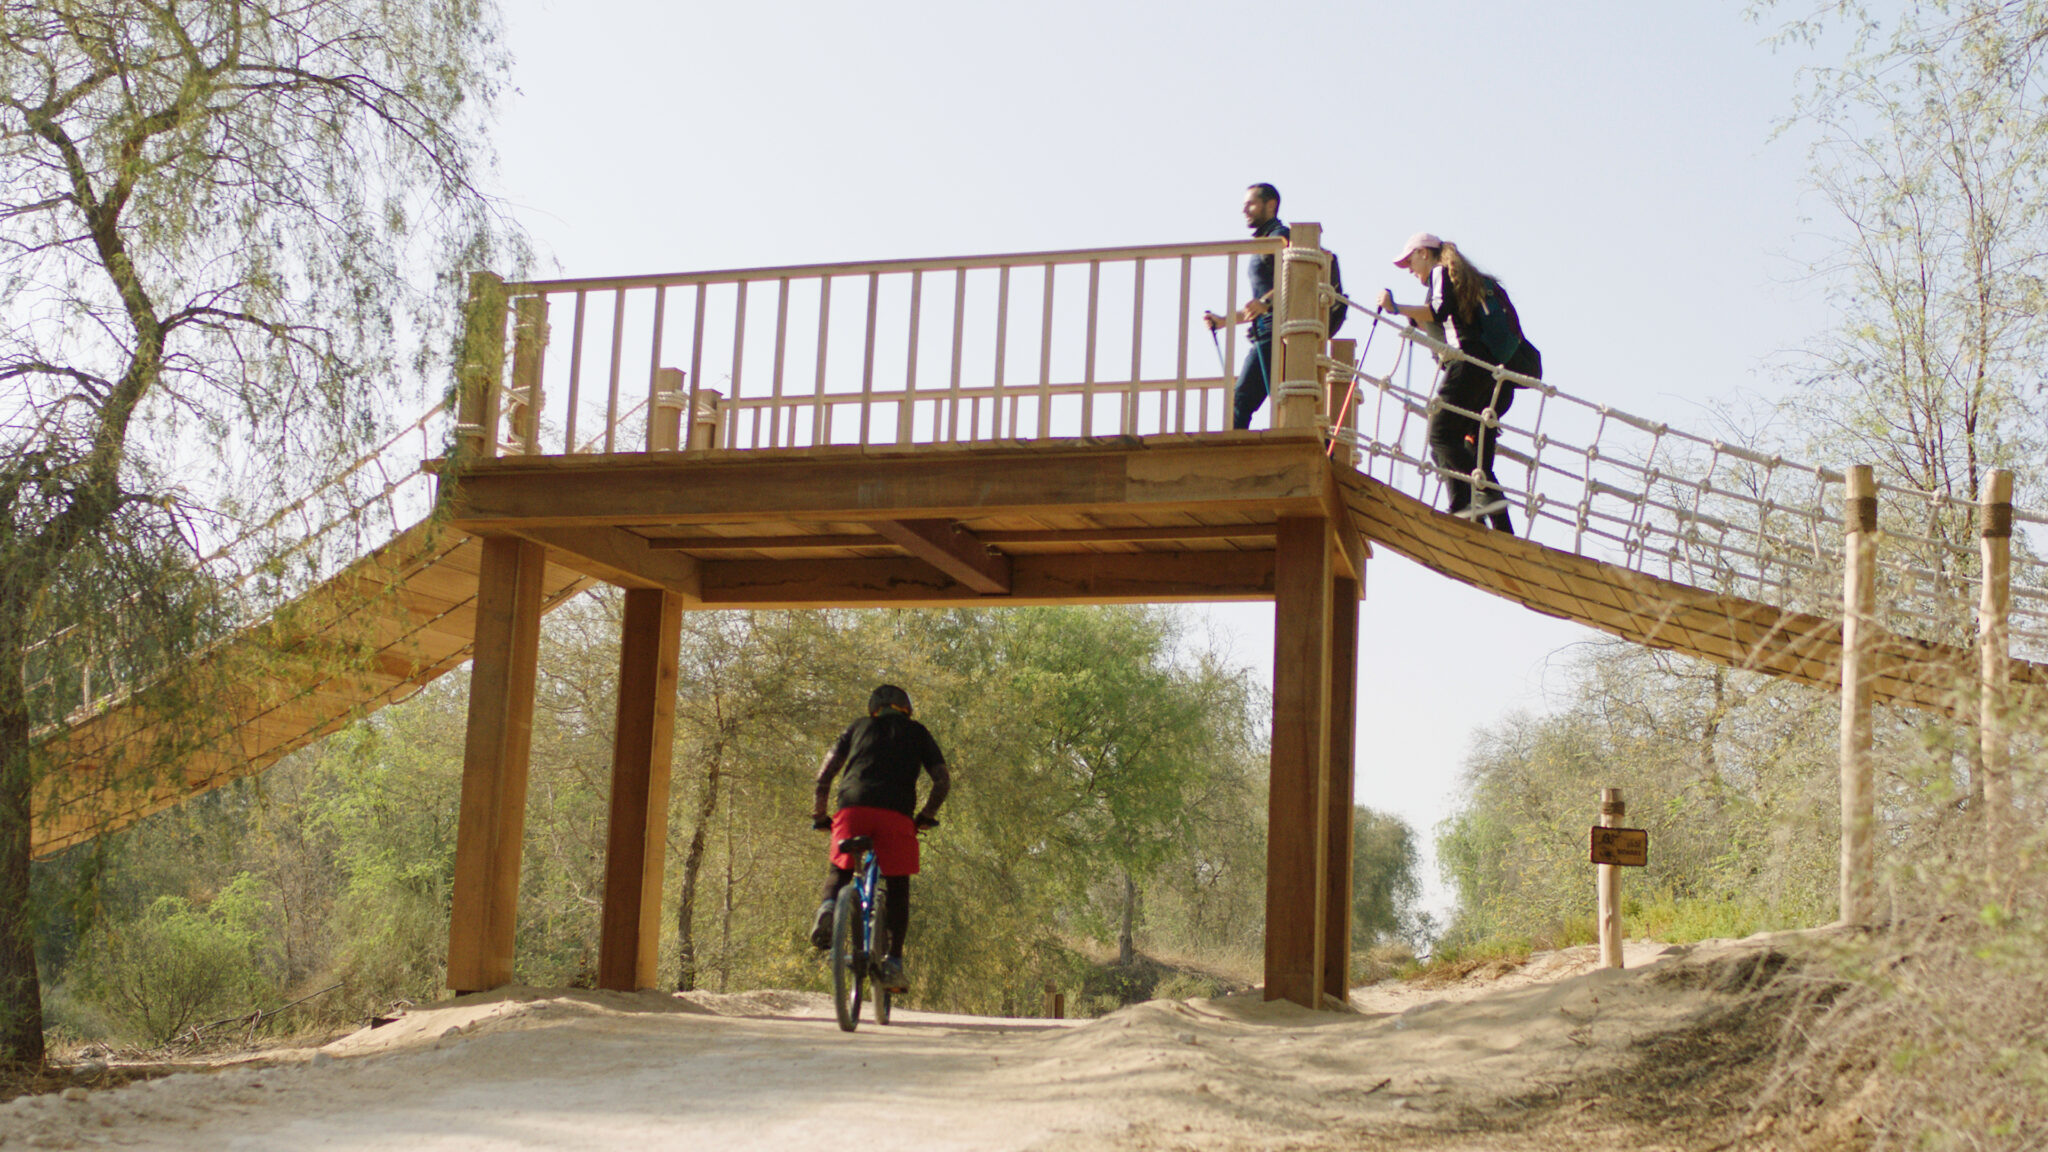 مسیرهای دوچرخه سواری و پیاده روی پارک مشرف (Mushrif Park biking and hiking trails)